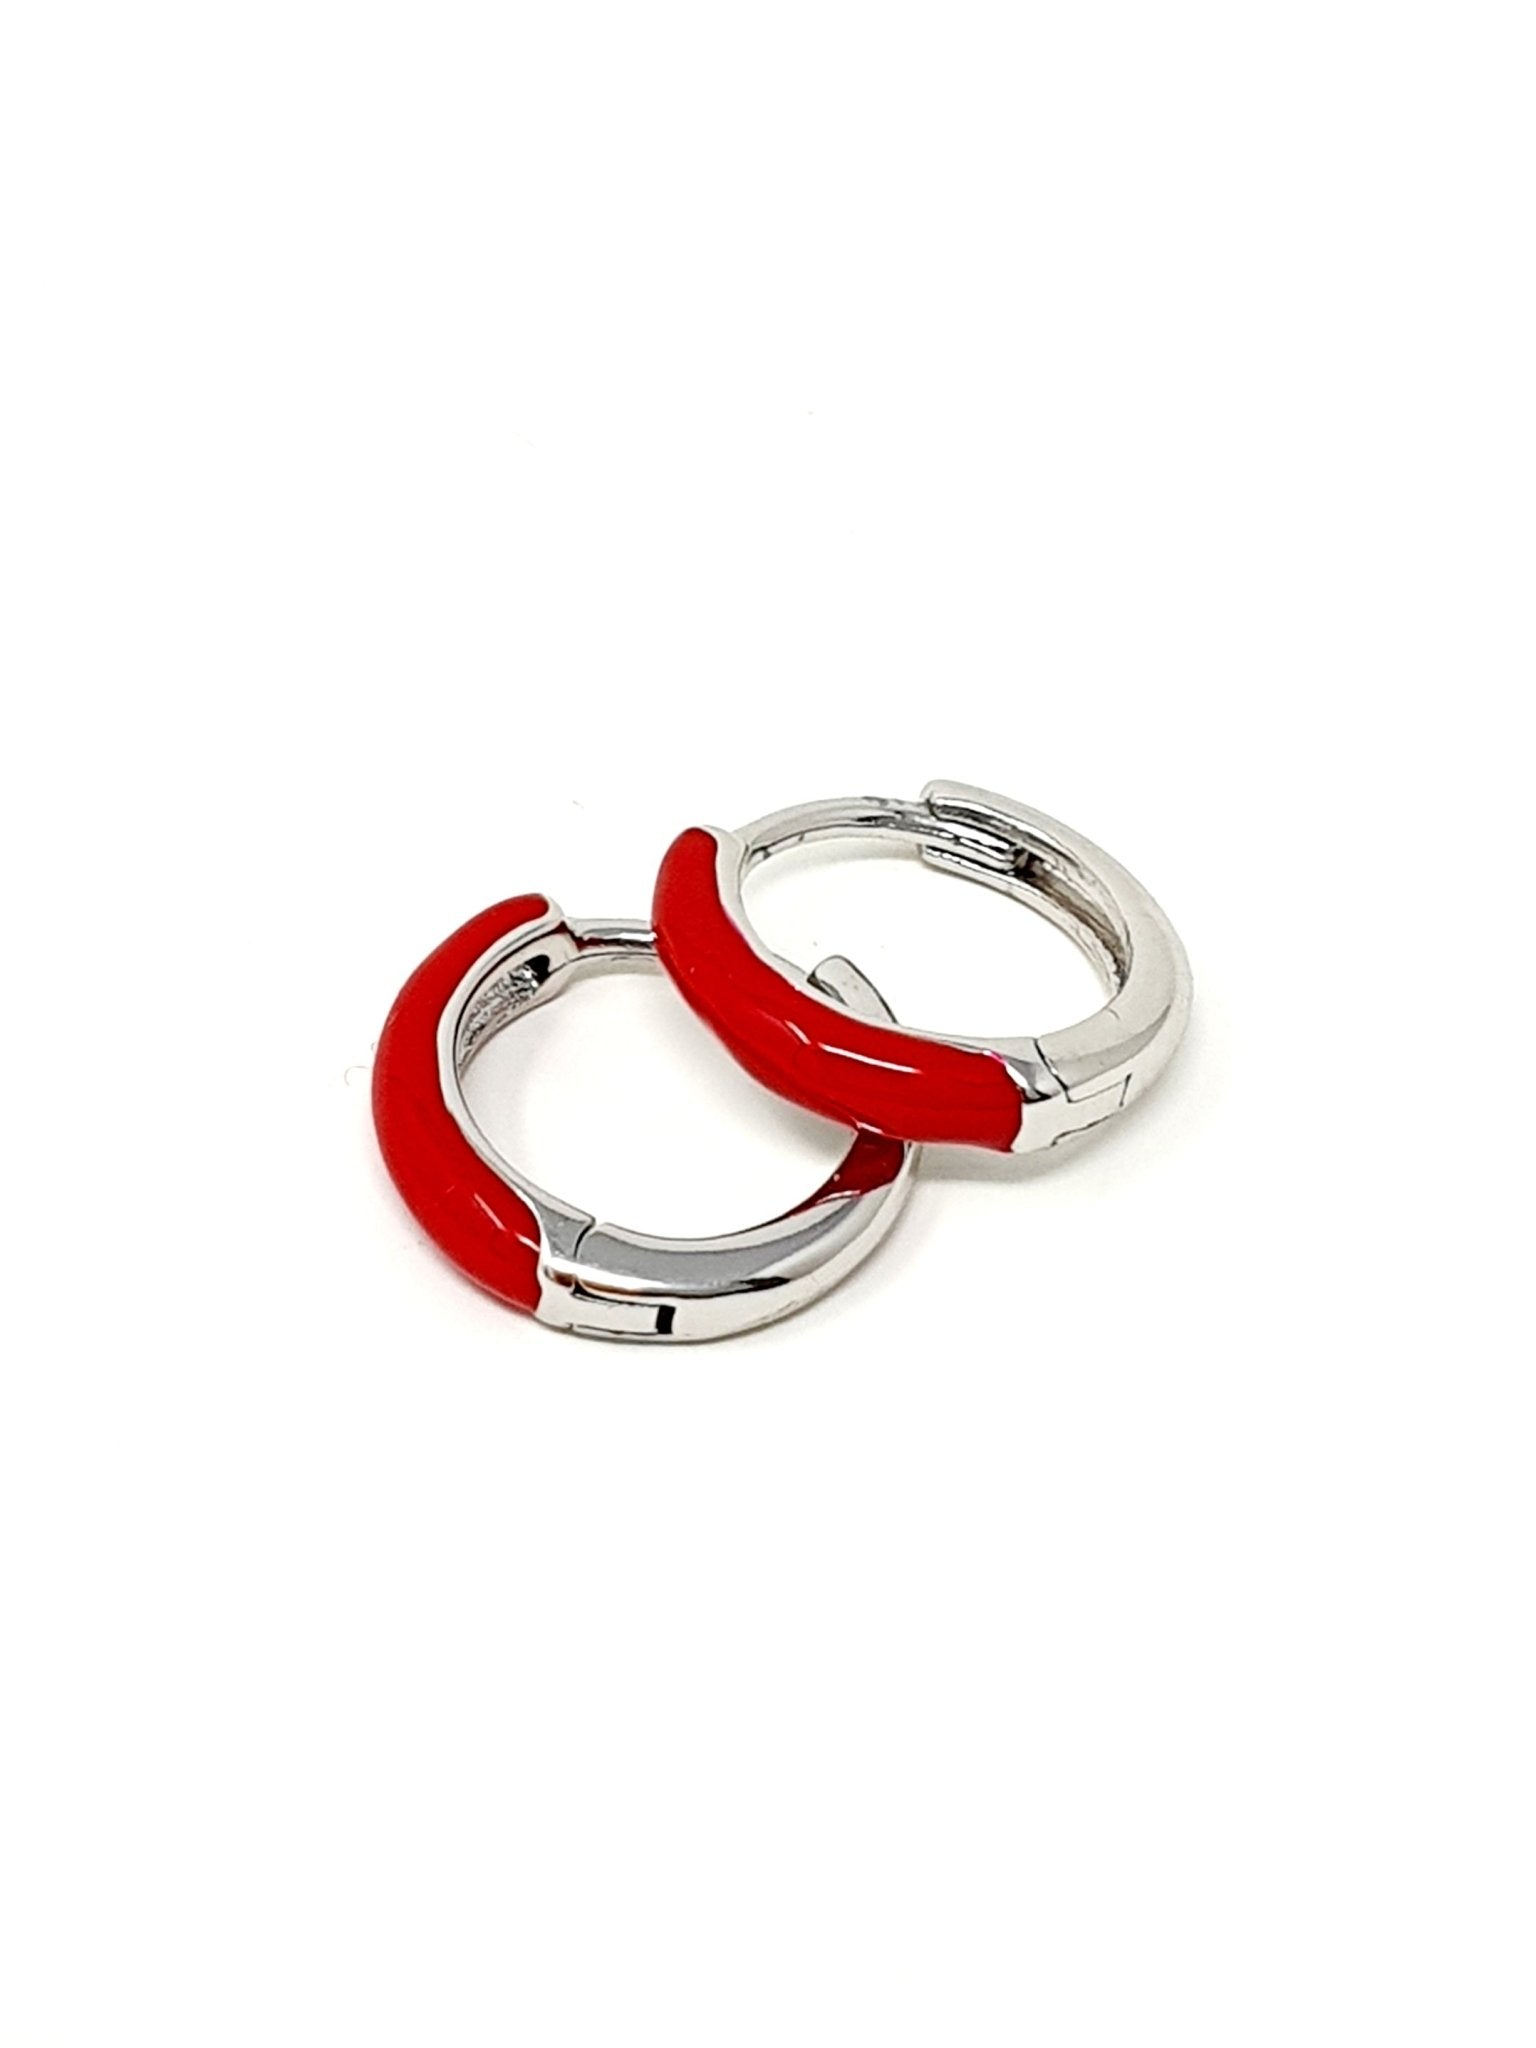 Coppia di mini hoops “Positano” silver con smalto rosso - 333HOPE333